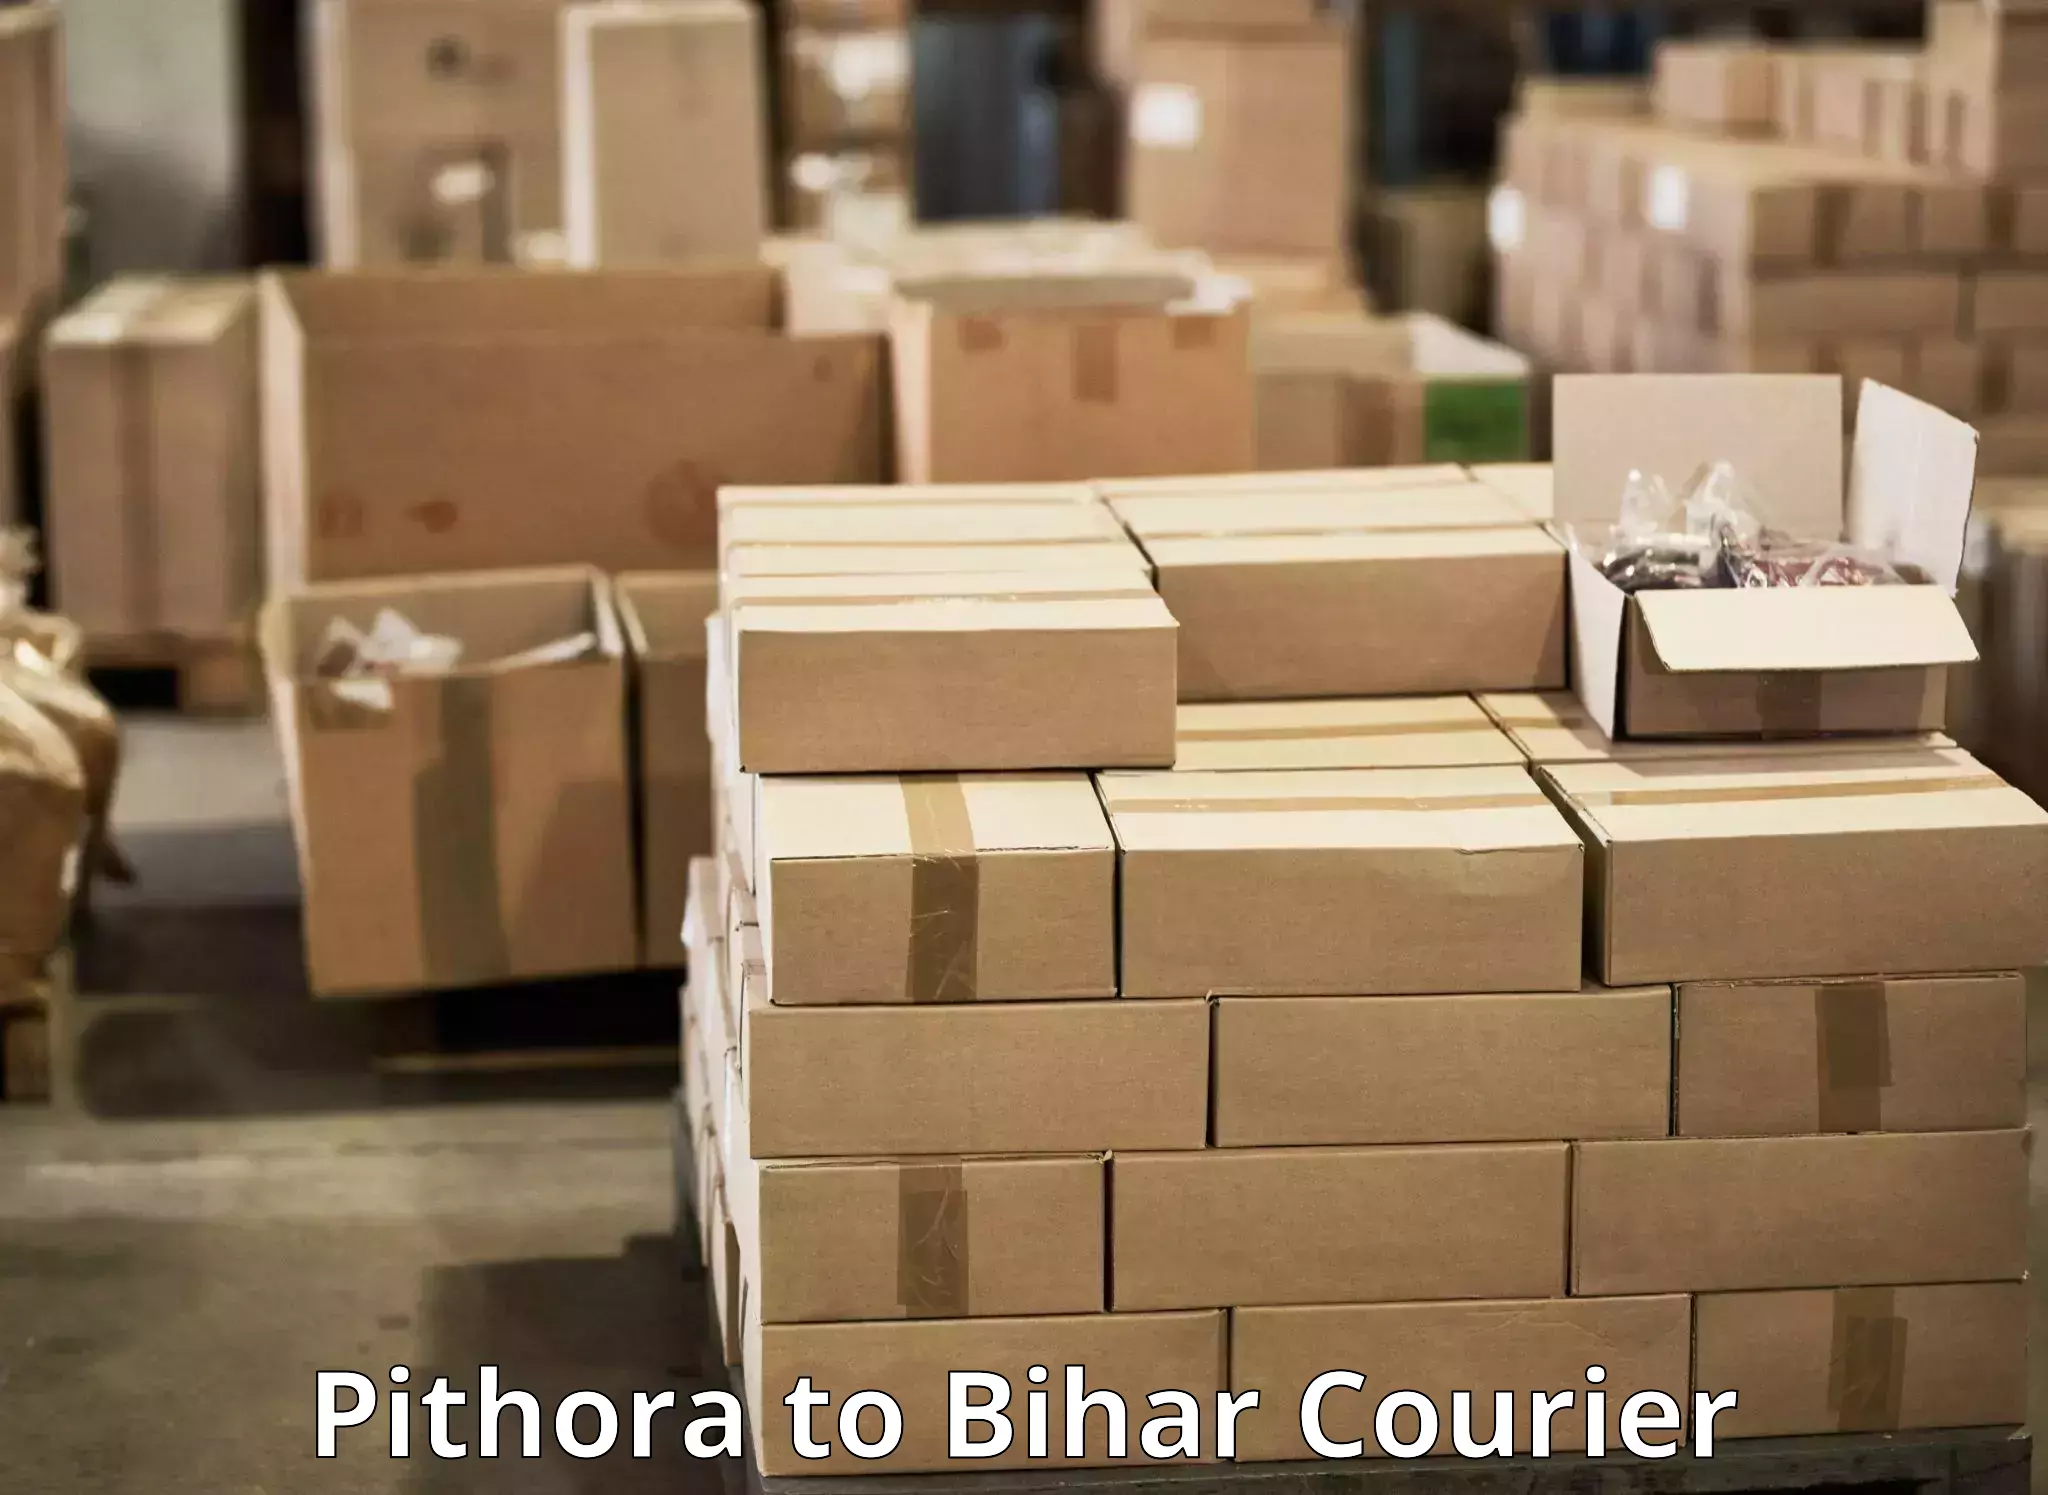 Courier service partnerships Pithora to Dighwara